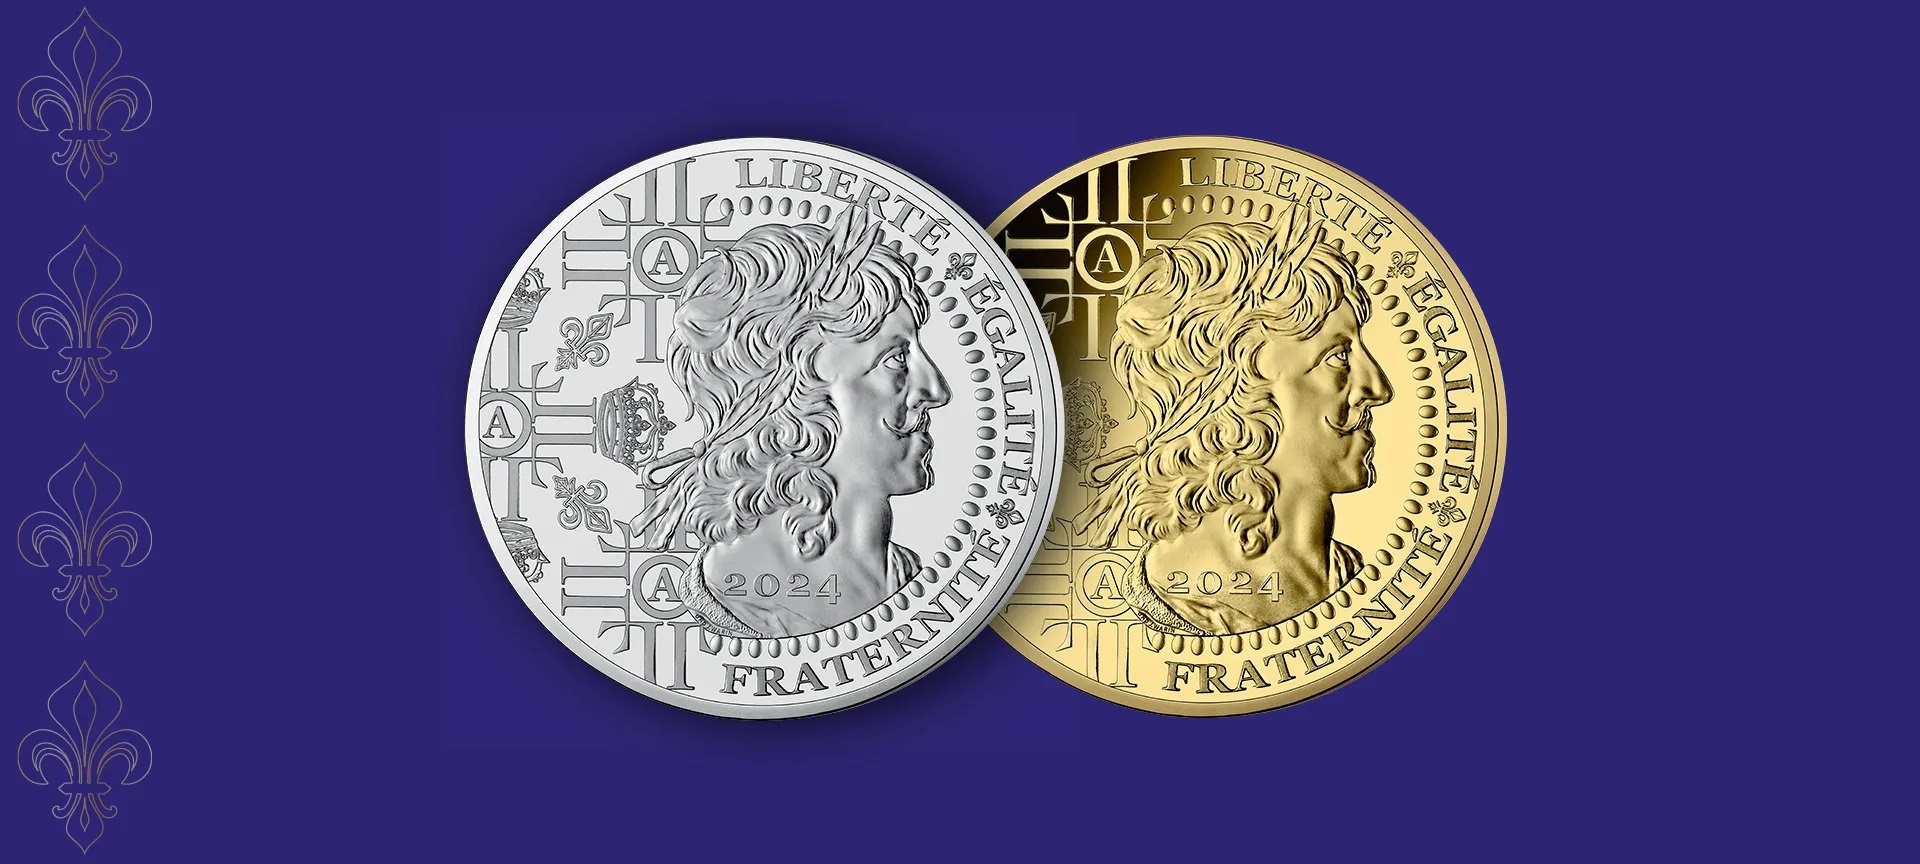 Monnaie de Paris French gold coin called Louis d or 2024 (shop illustration) (zoom)